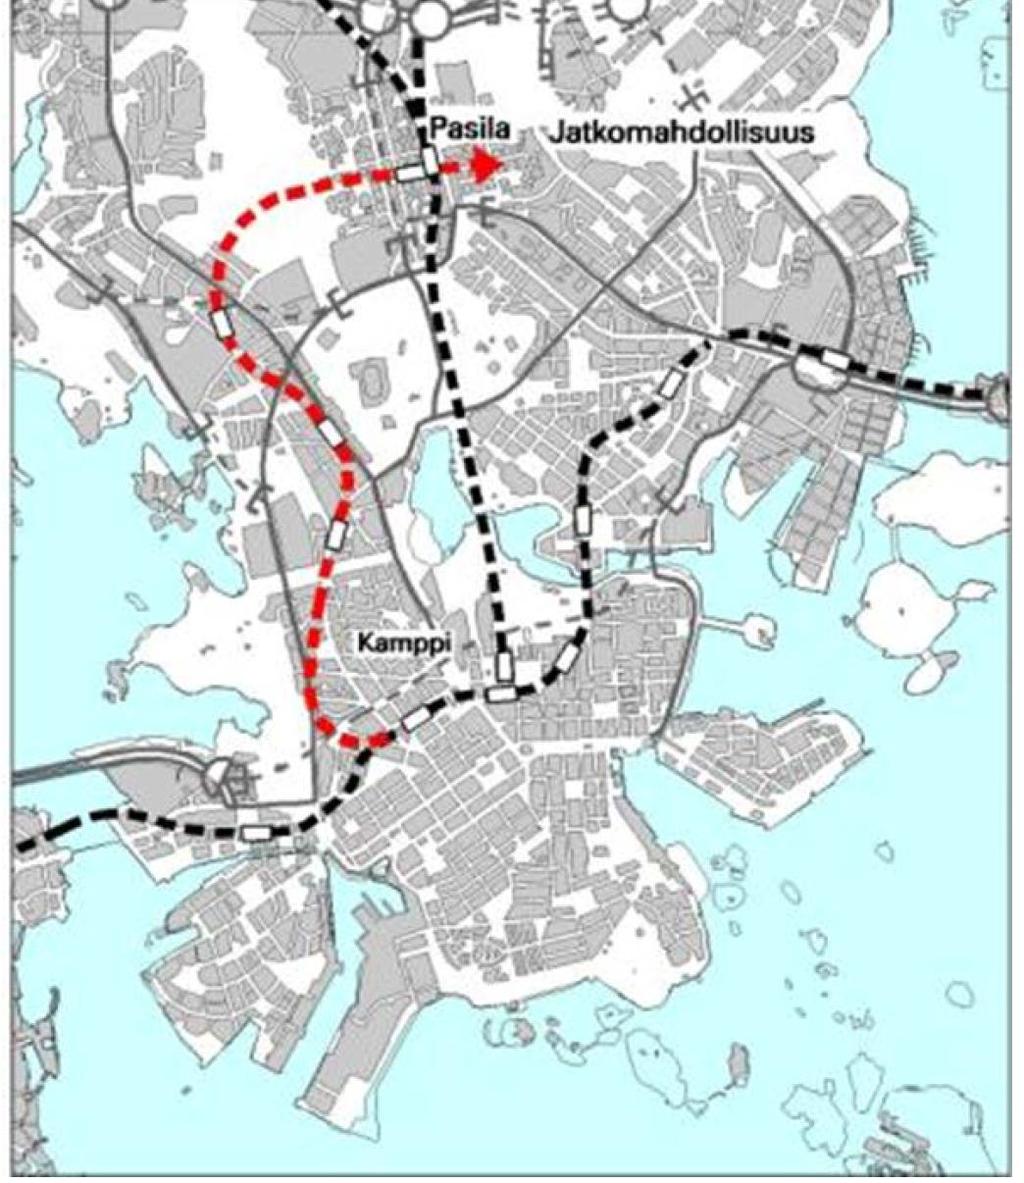 19 Töölön metro 4 asemaa ja 5 km tunnelia